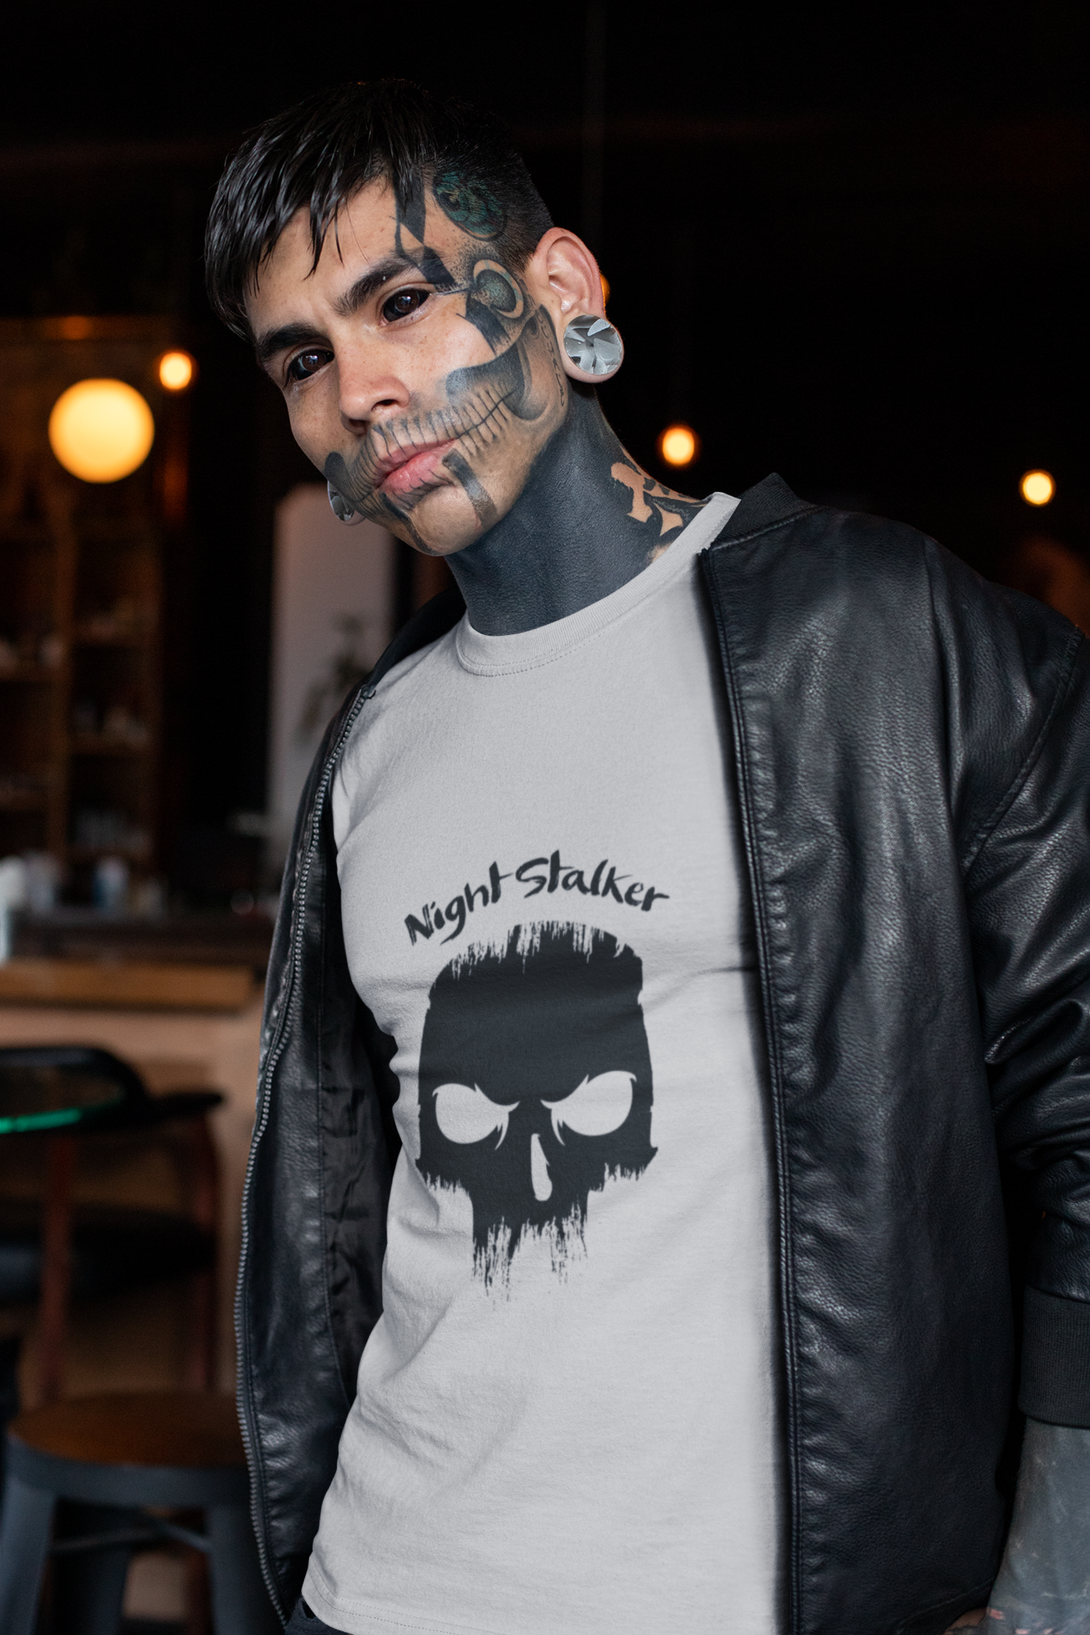 Dark Skull Night Stalker Printed T Shirt For Men - WowWaves - 5